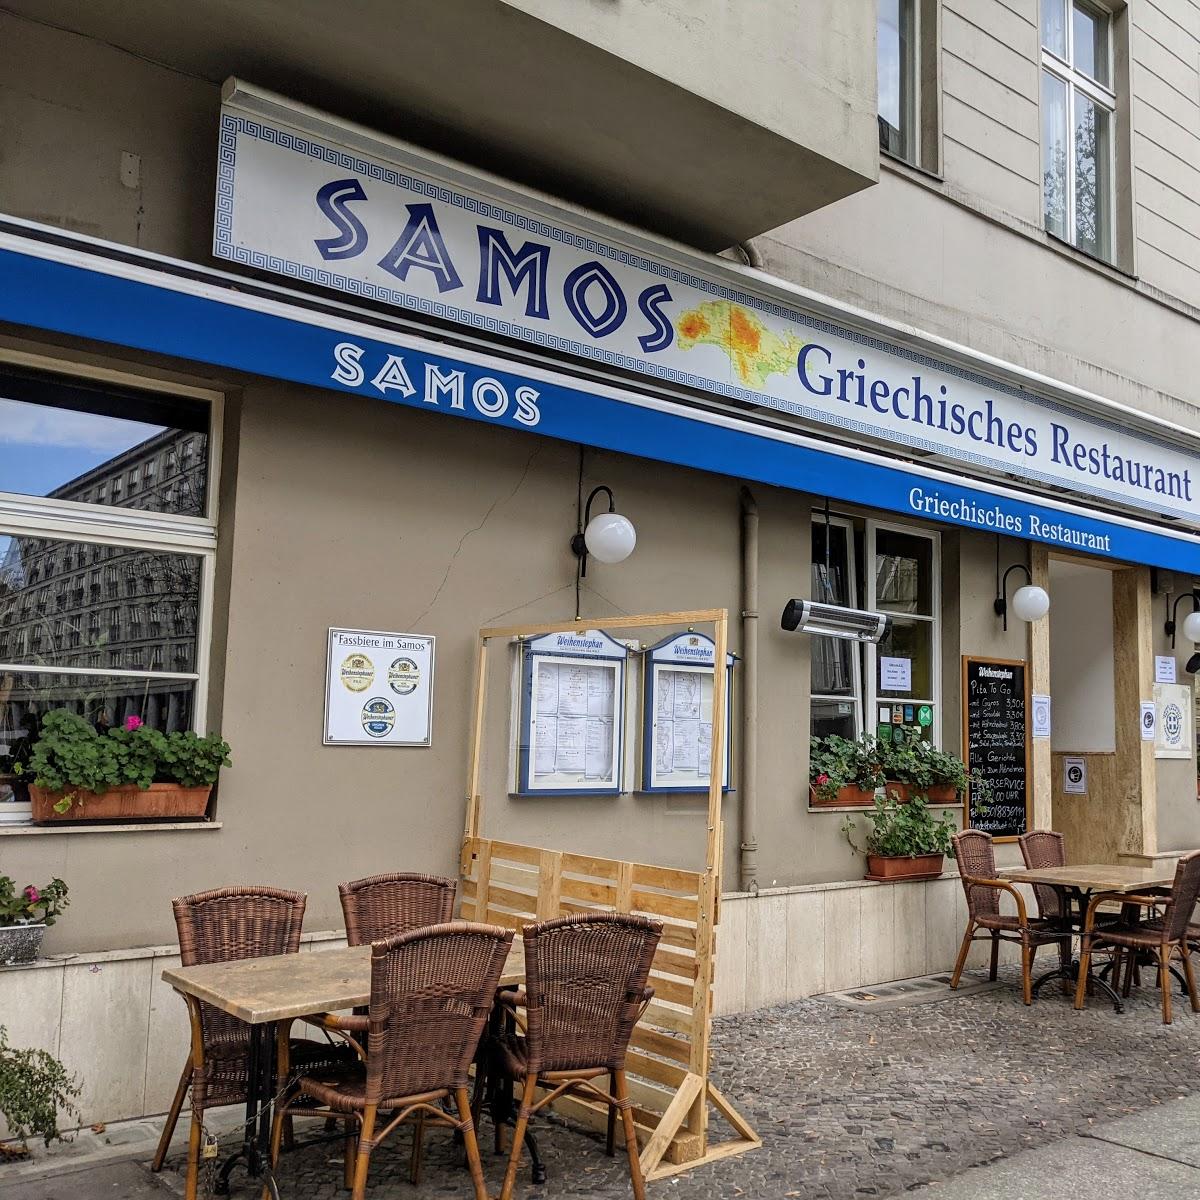 Restaurant "Samos" in Berlin